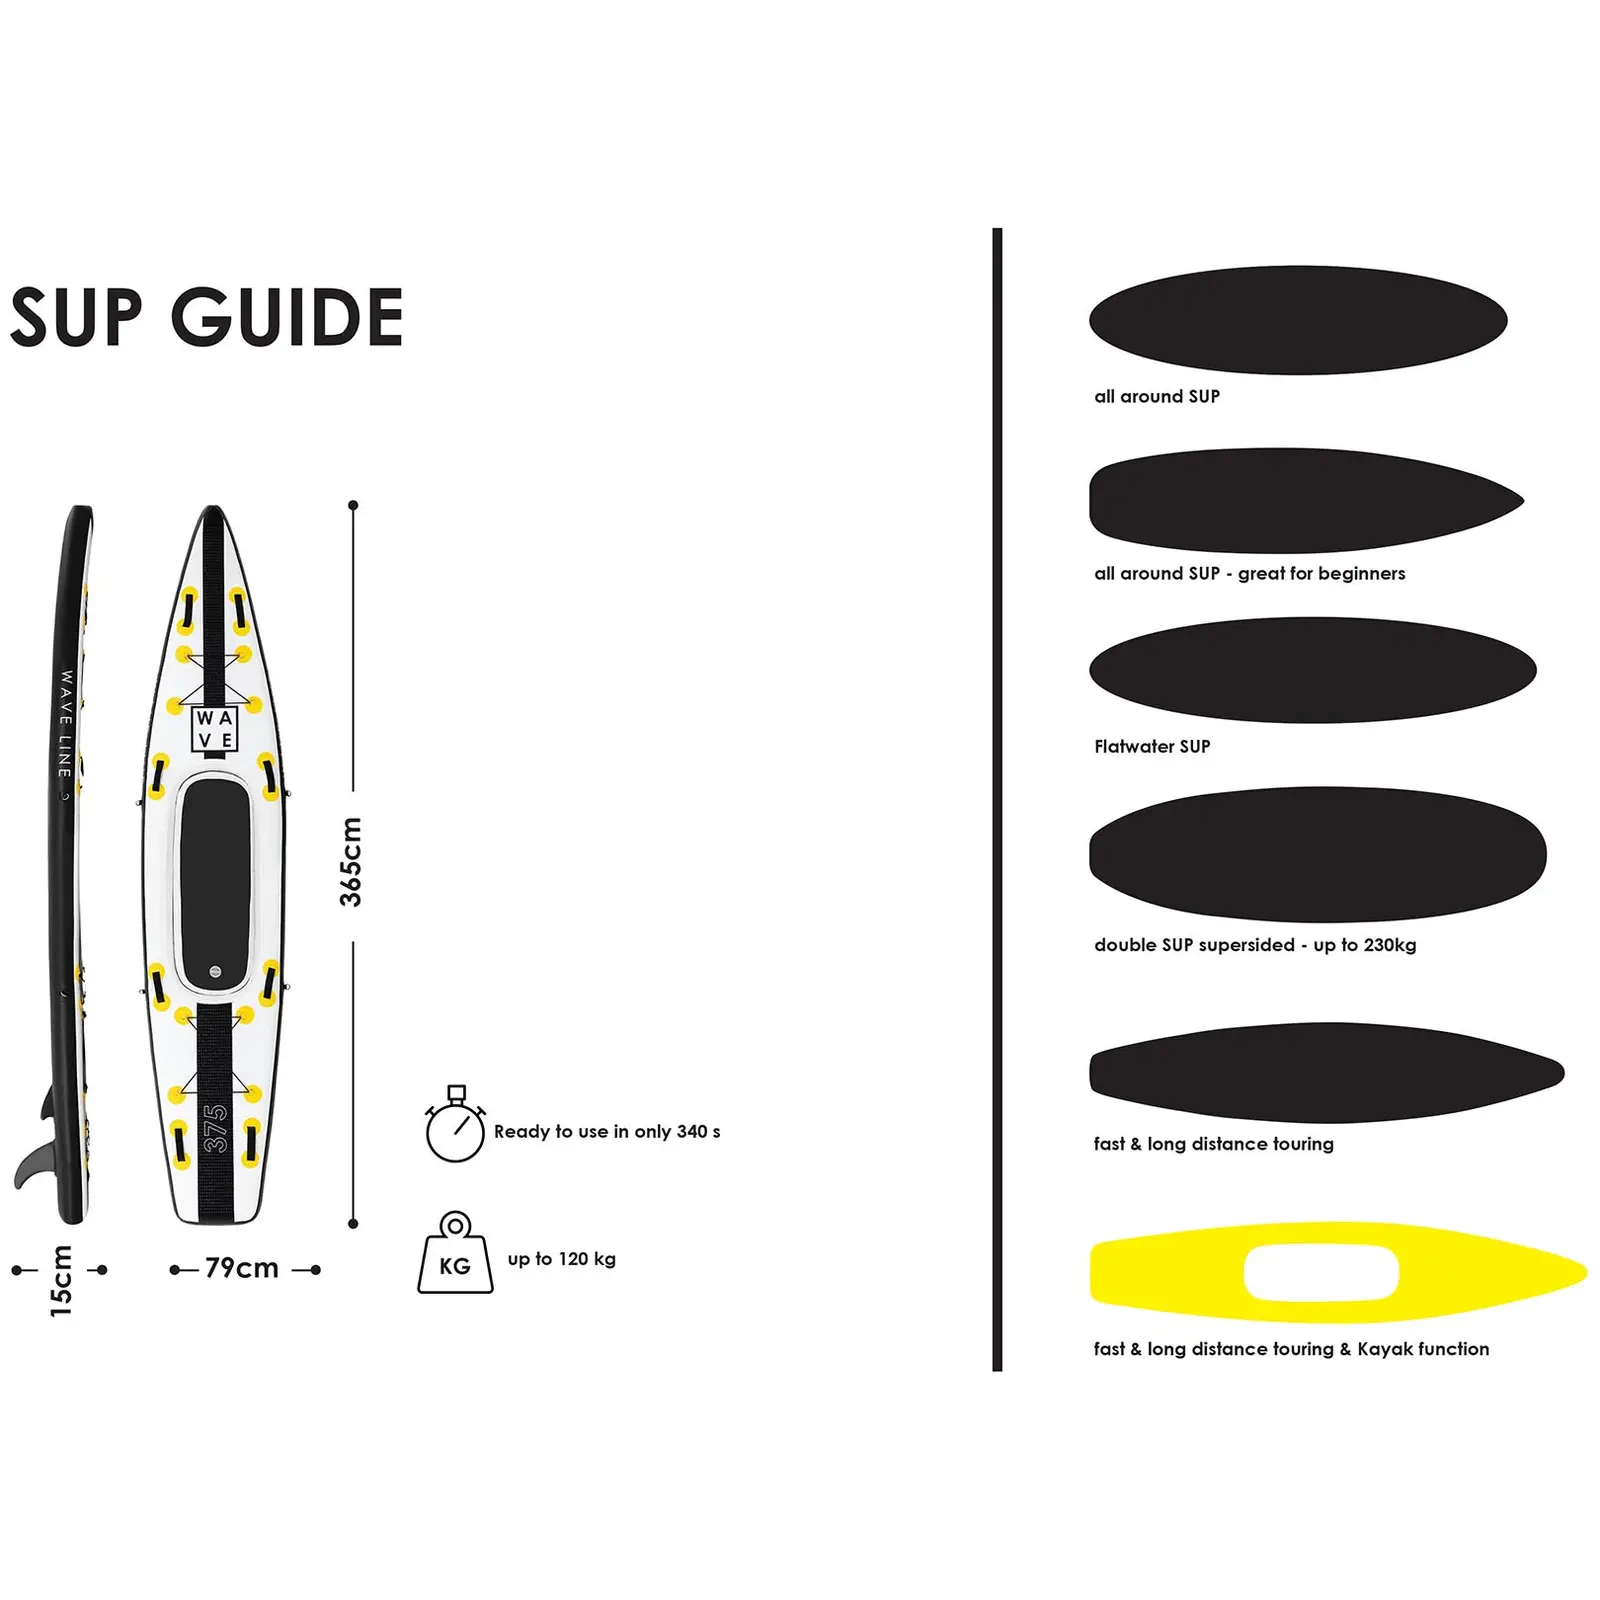 SUP gonfiabile - 120 kg - nero/giallo - Set con remo, sellino e accessori